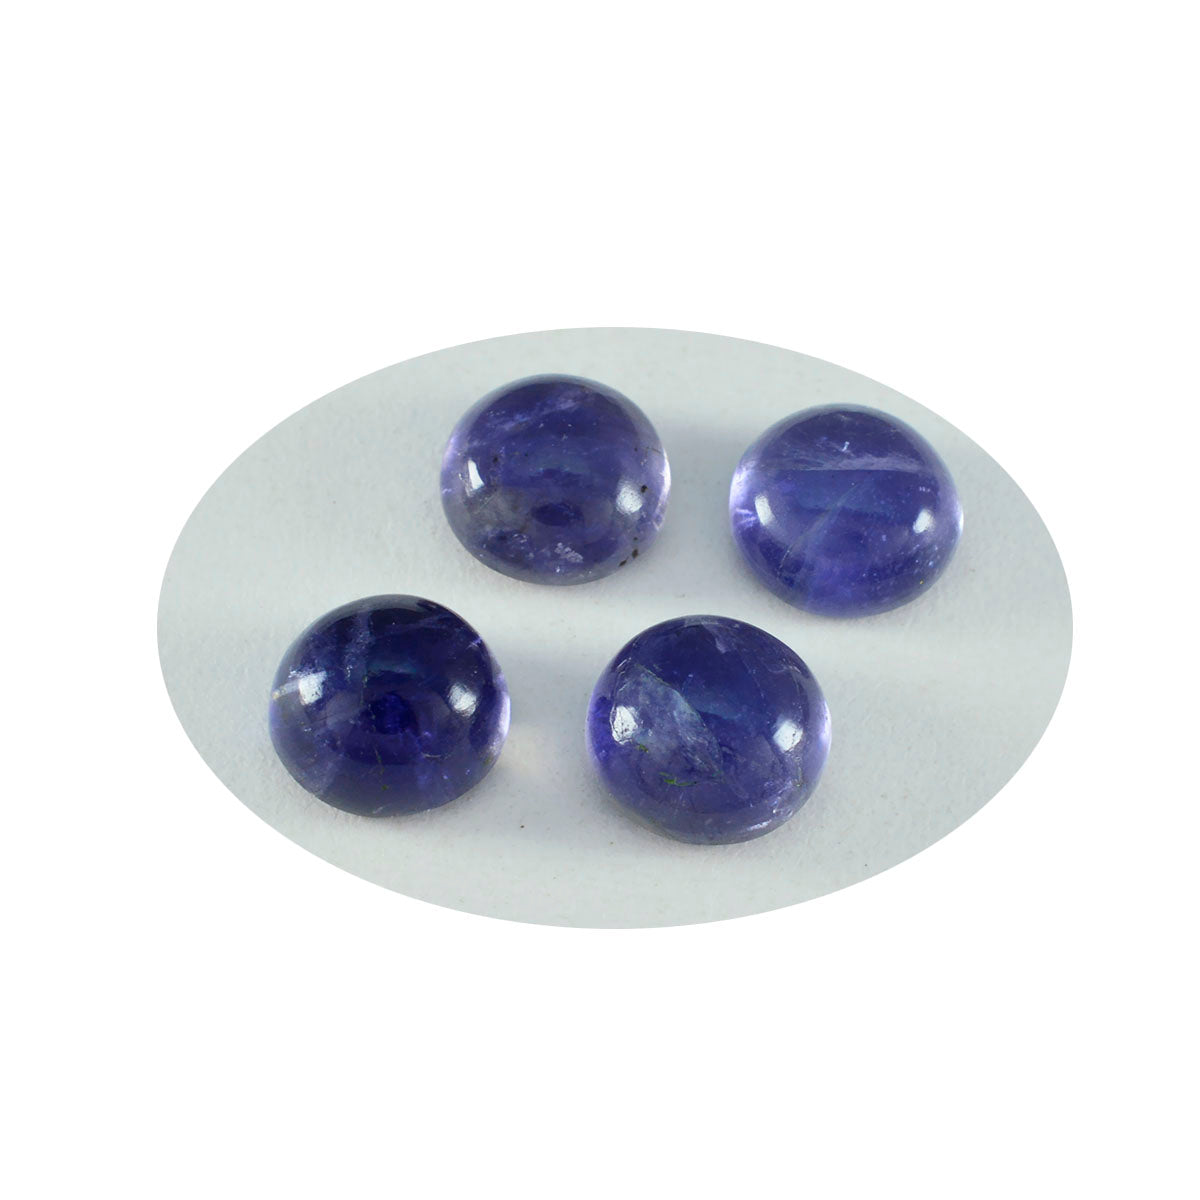 Riyogems 1PC blauwe ioliet cabochon 13x13 mm ronde vorm aantrekkelijke kwaliteitssteen